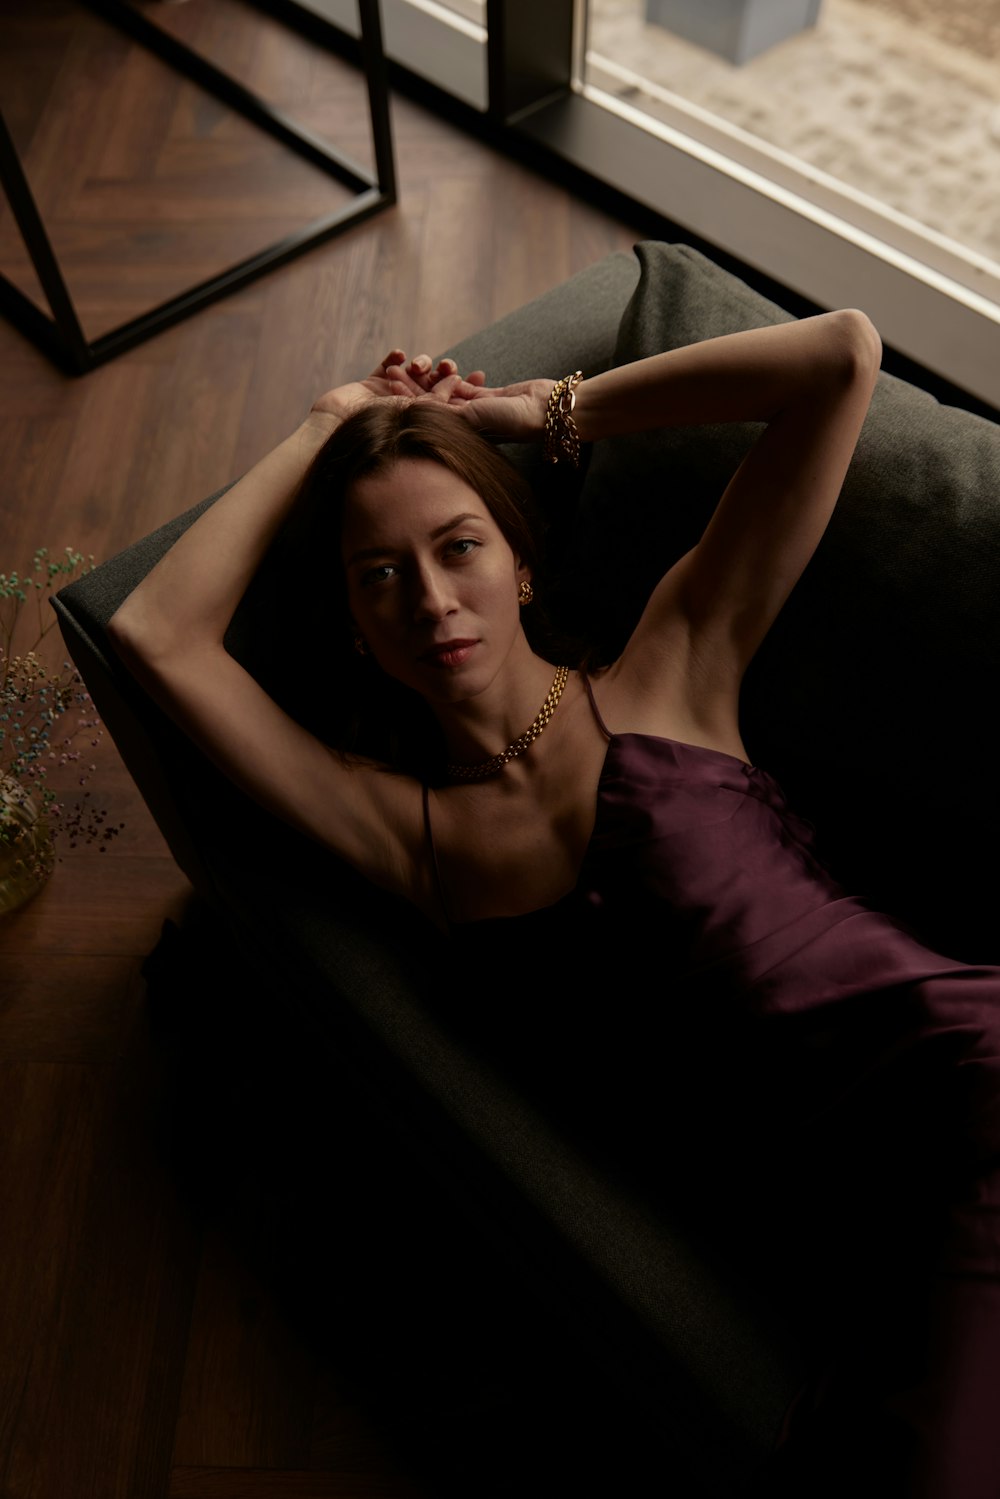 Una mujer con un vestido púrpura acostada en un sofá